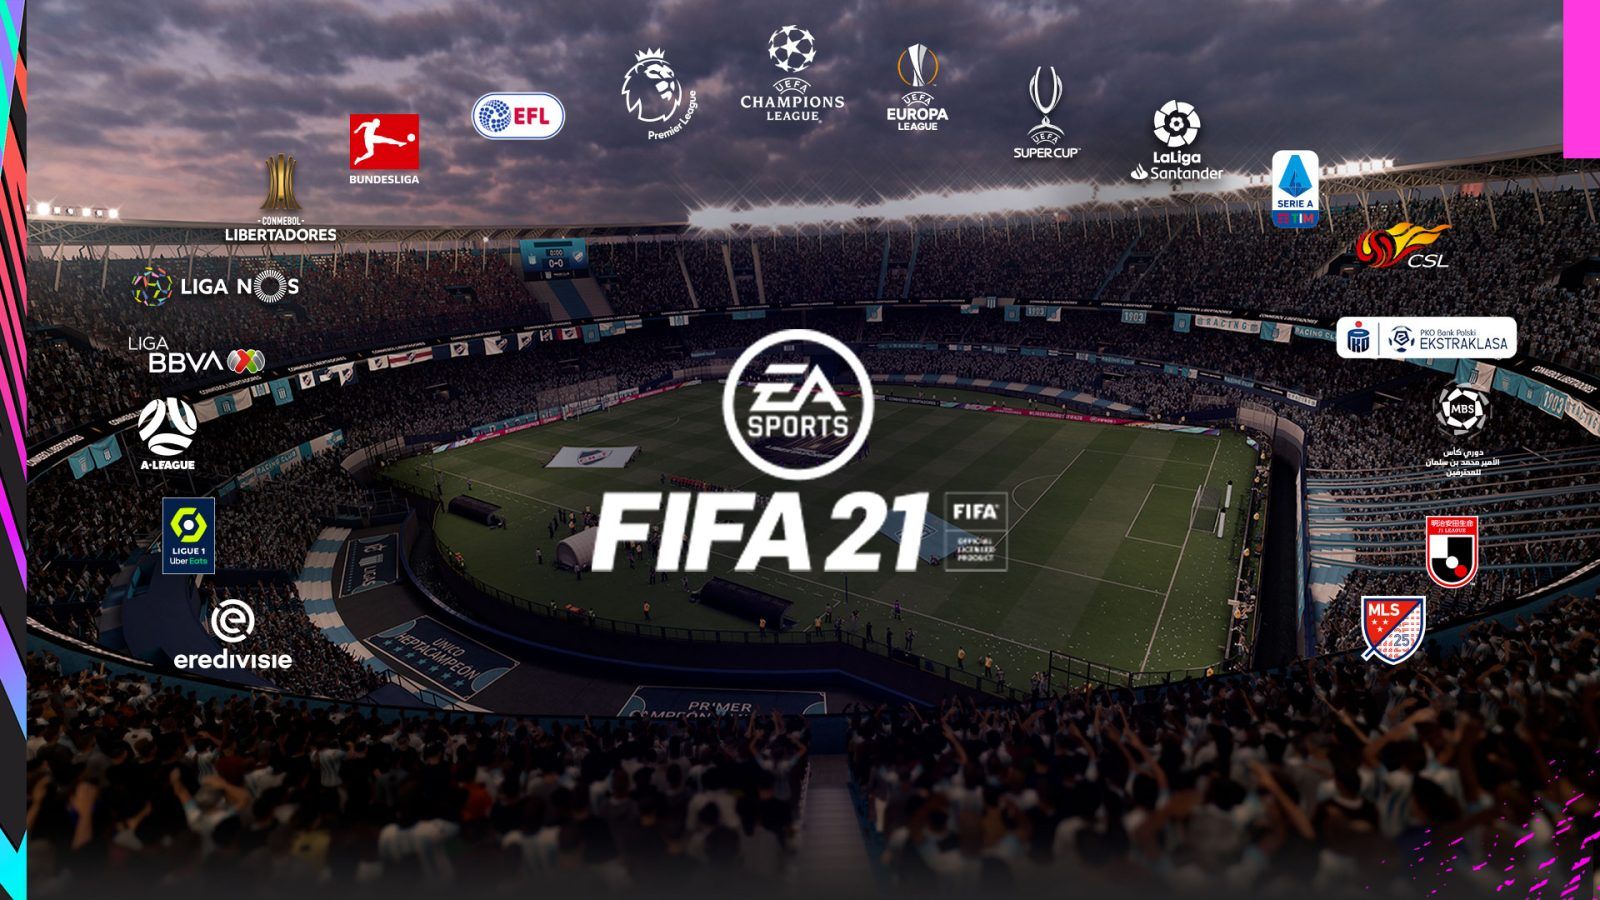 Lire la suite à propos de l’article Fifa sur RS Pinterest: FIFA 21 lance le 9 octobre avec un mode carrière mis à jour, des systèmes d’attaque, etc.